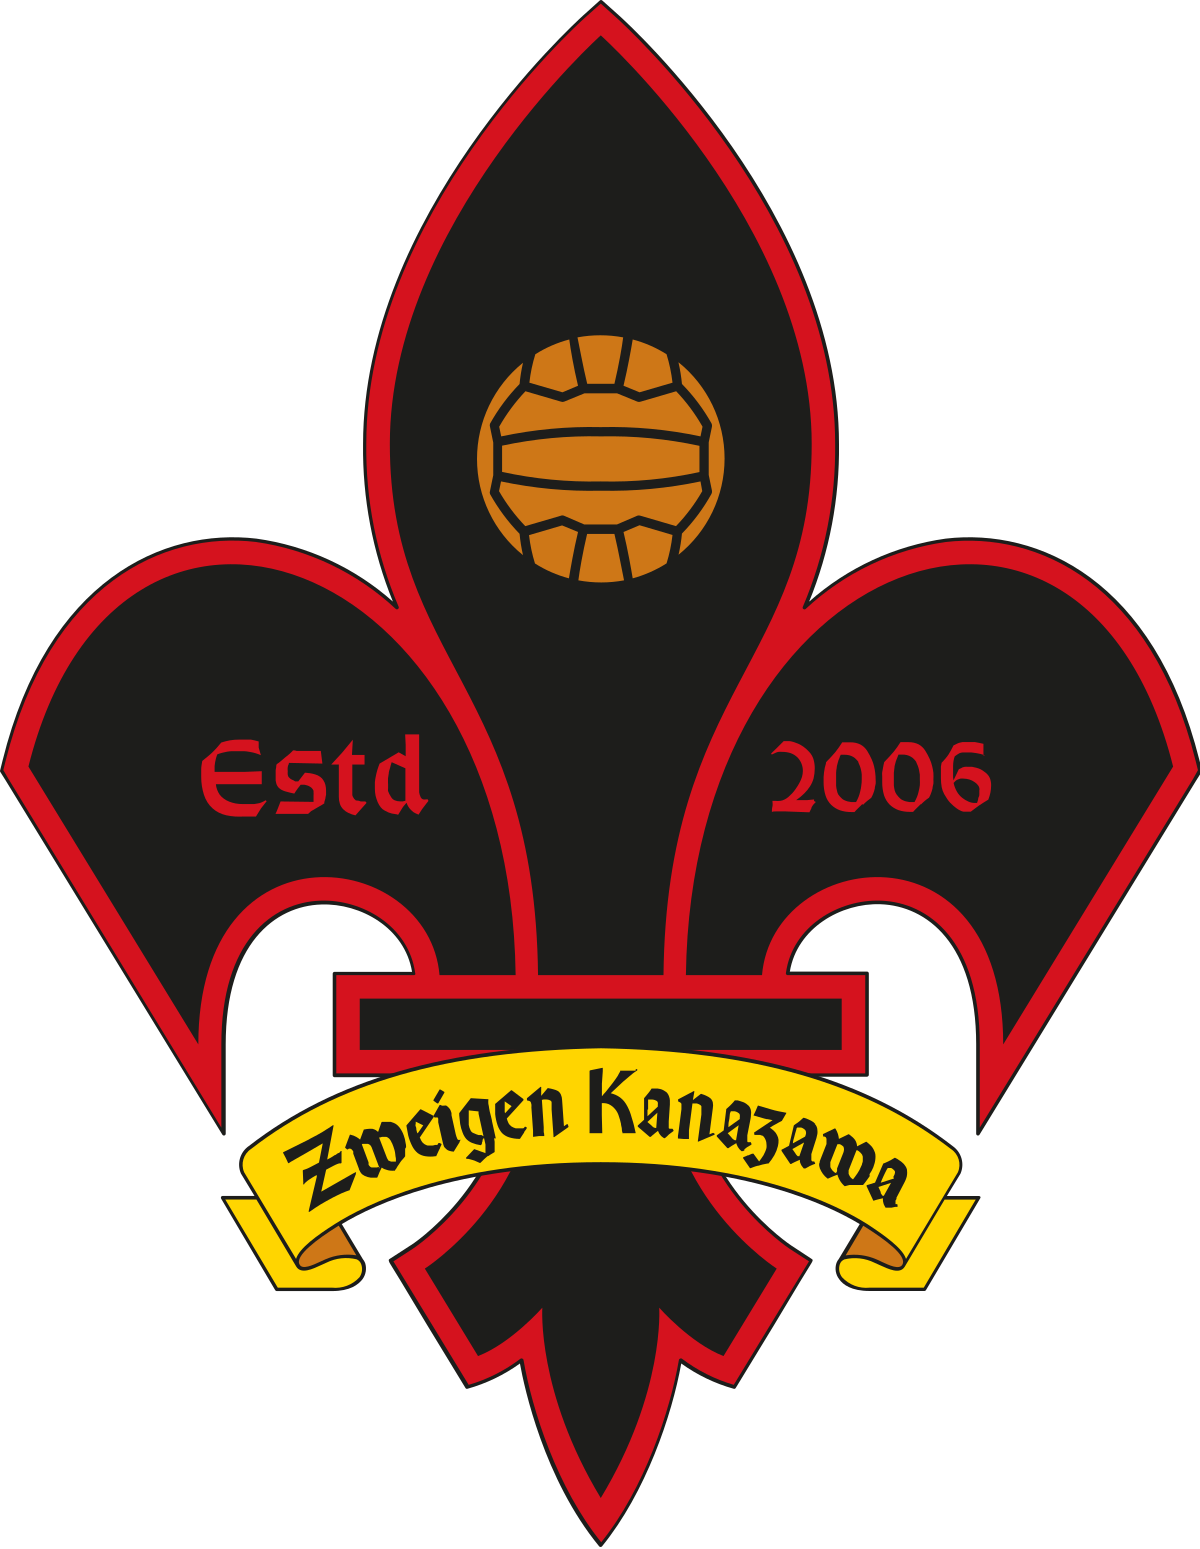 Wappen ehemals Ishikawa FC Zweigen Kanazawa  26644